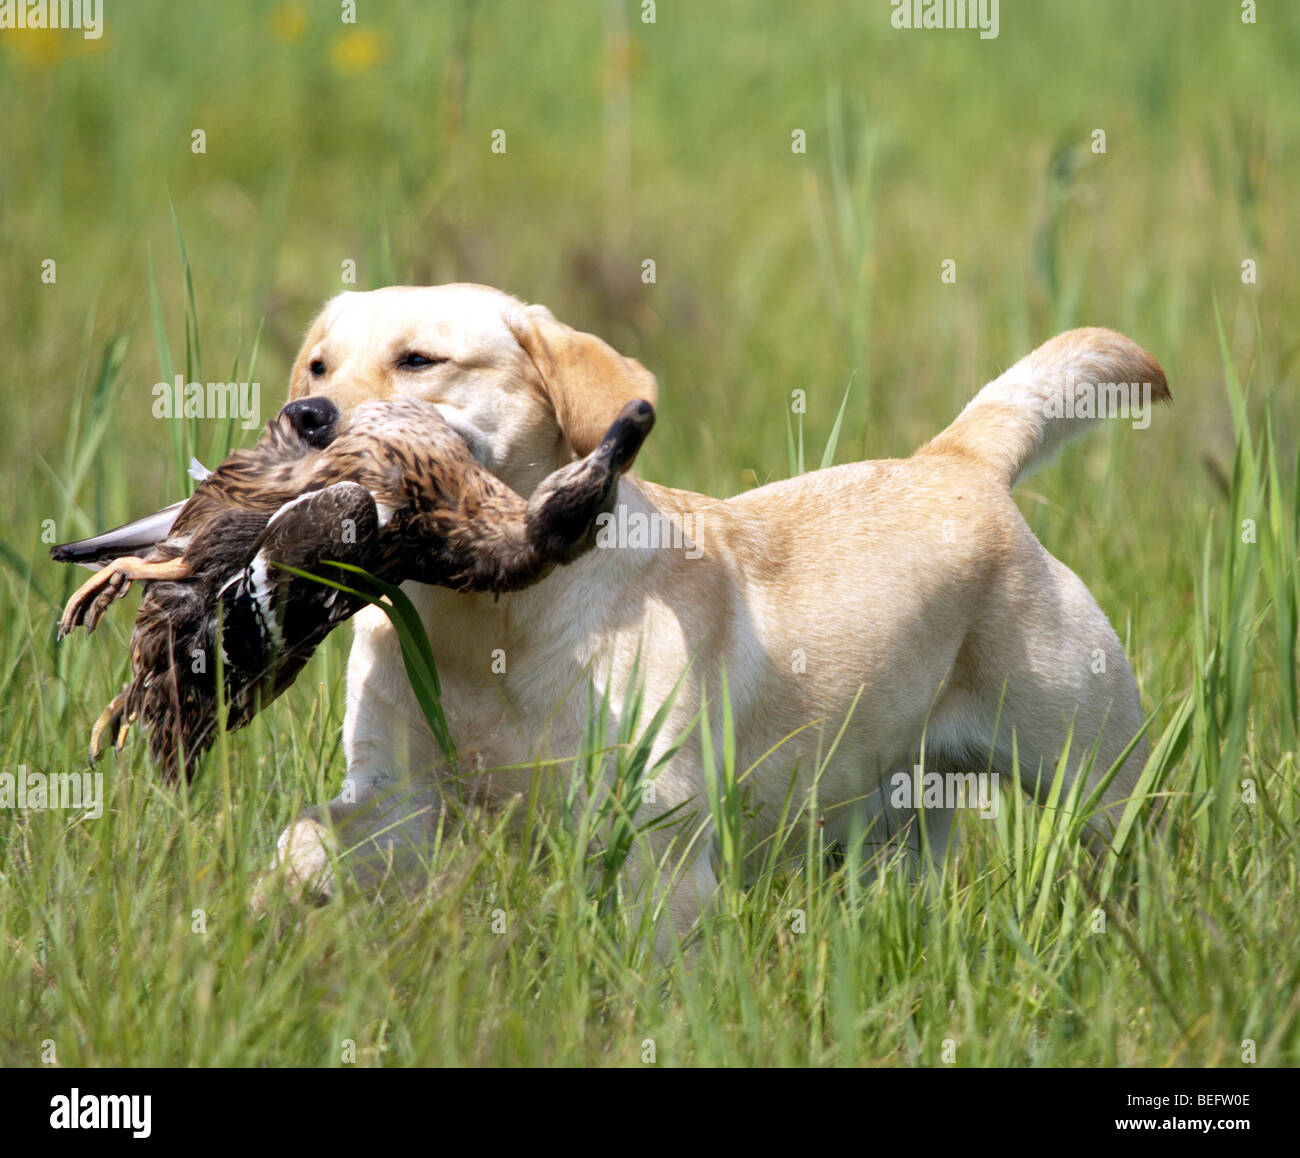 Yellow Labrador Retriever retrieving duck in high grass. Stock Photo